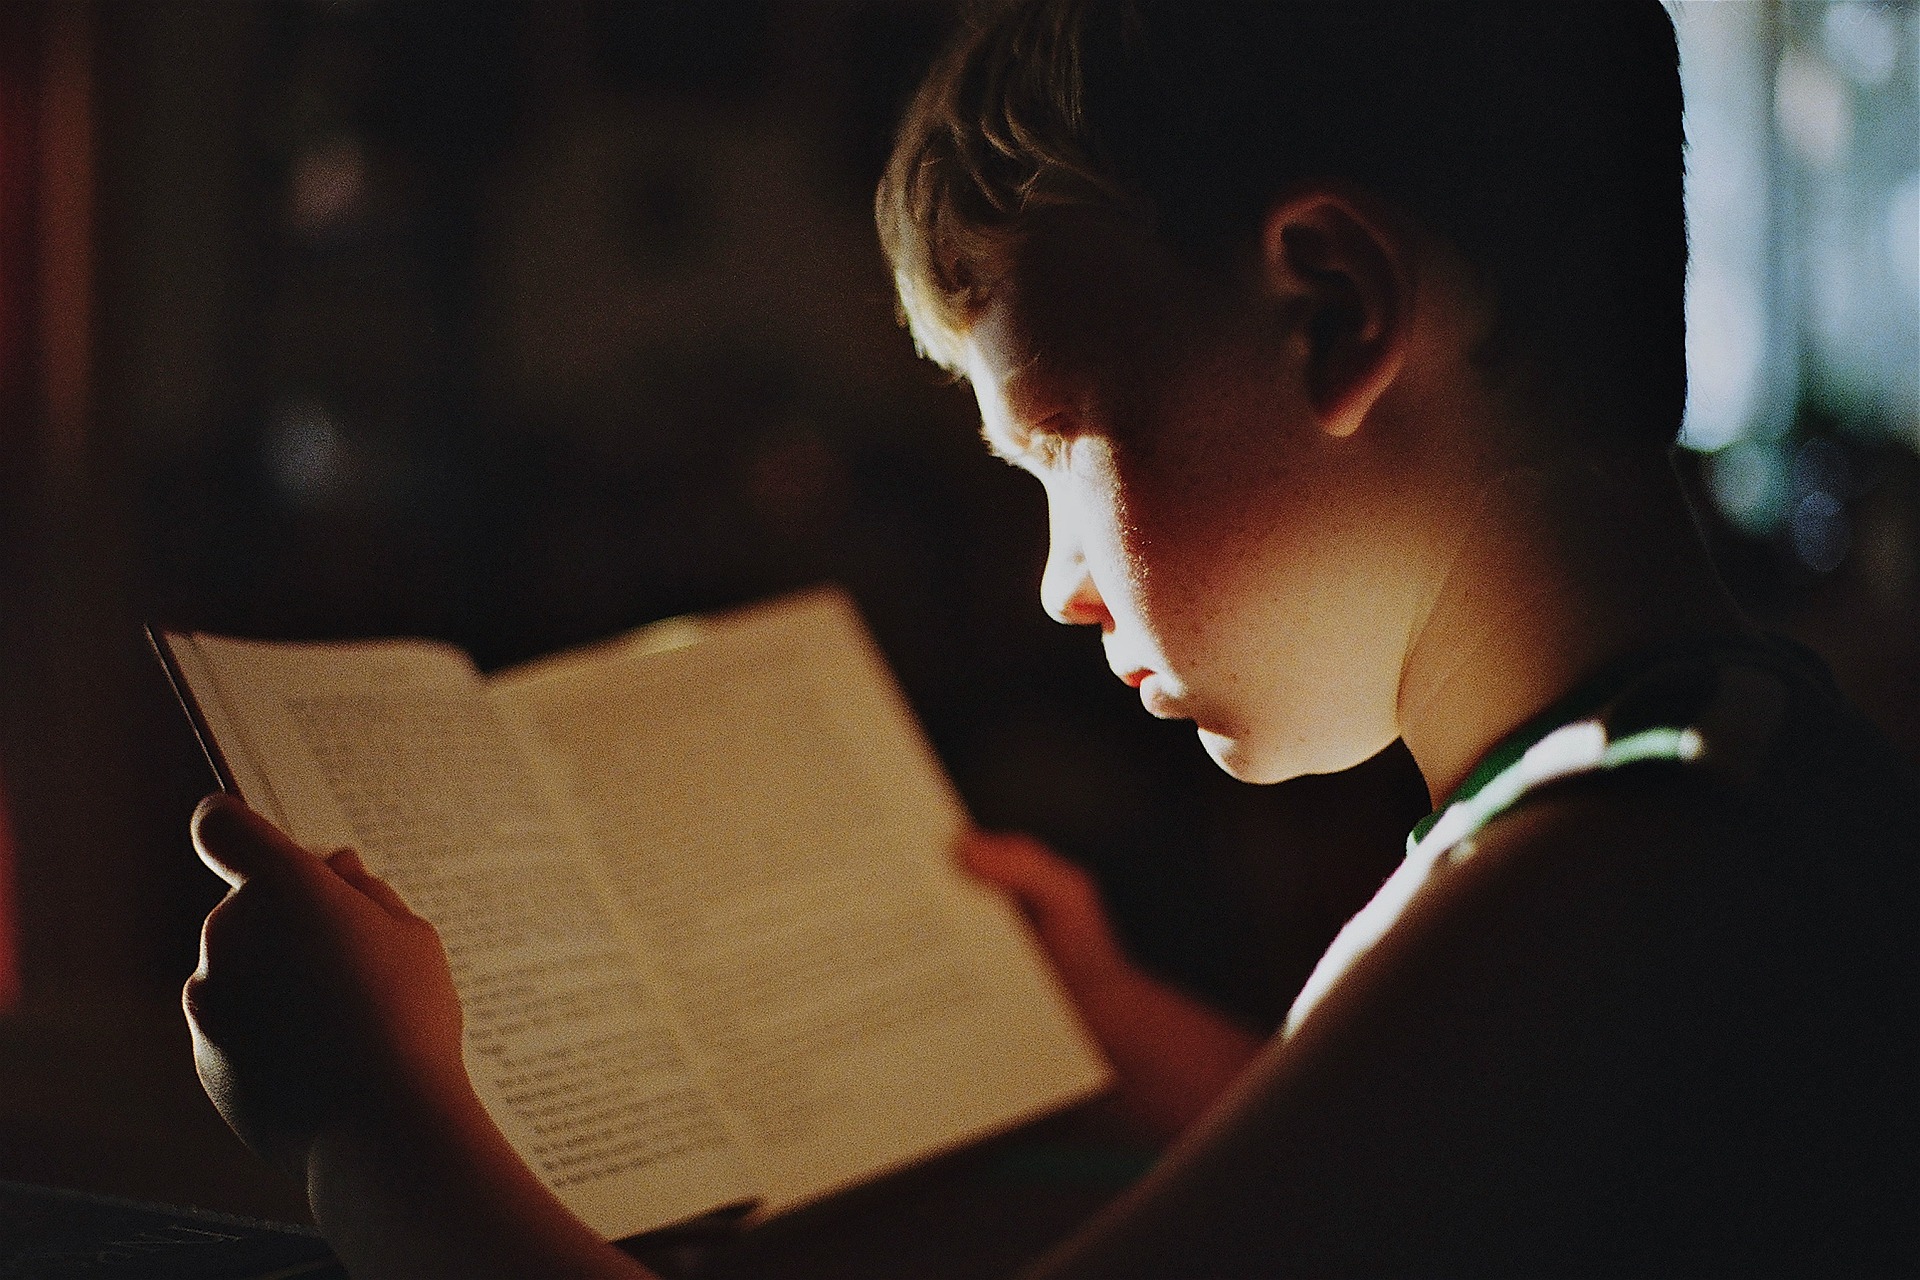 어두운 방에서 작은 불빛을 통해 책을 집중해서 읽고 있는 아이를 찍은 사진